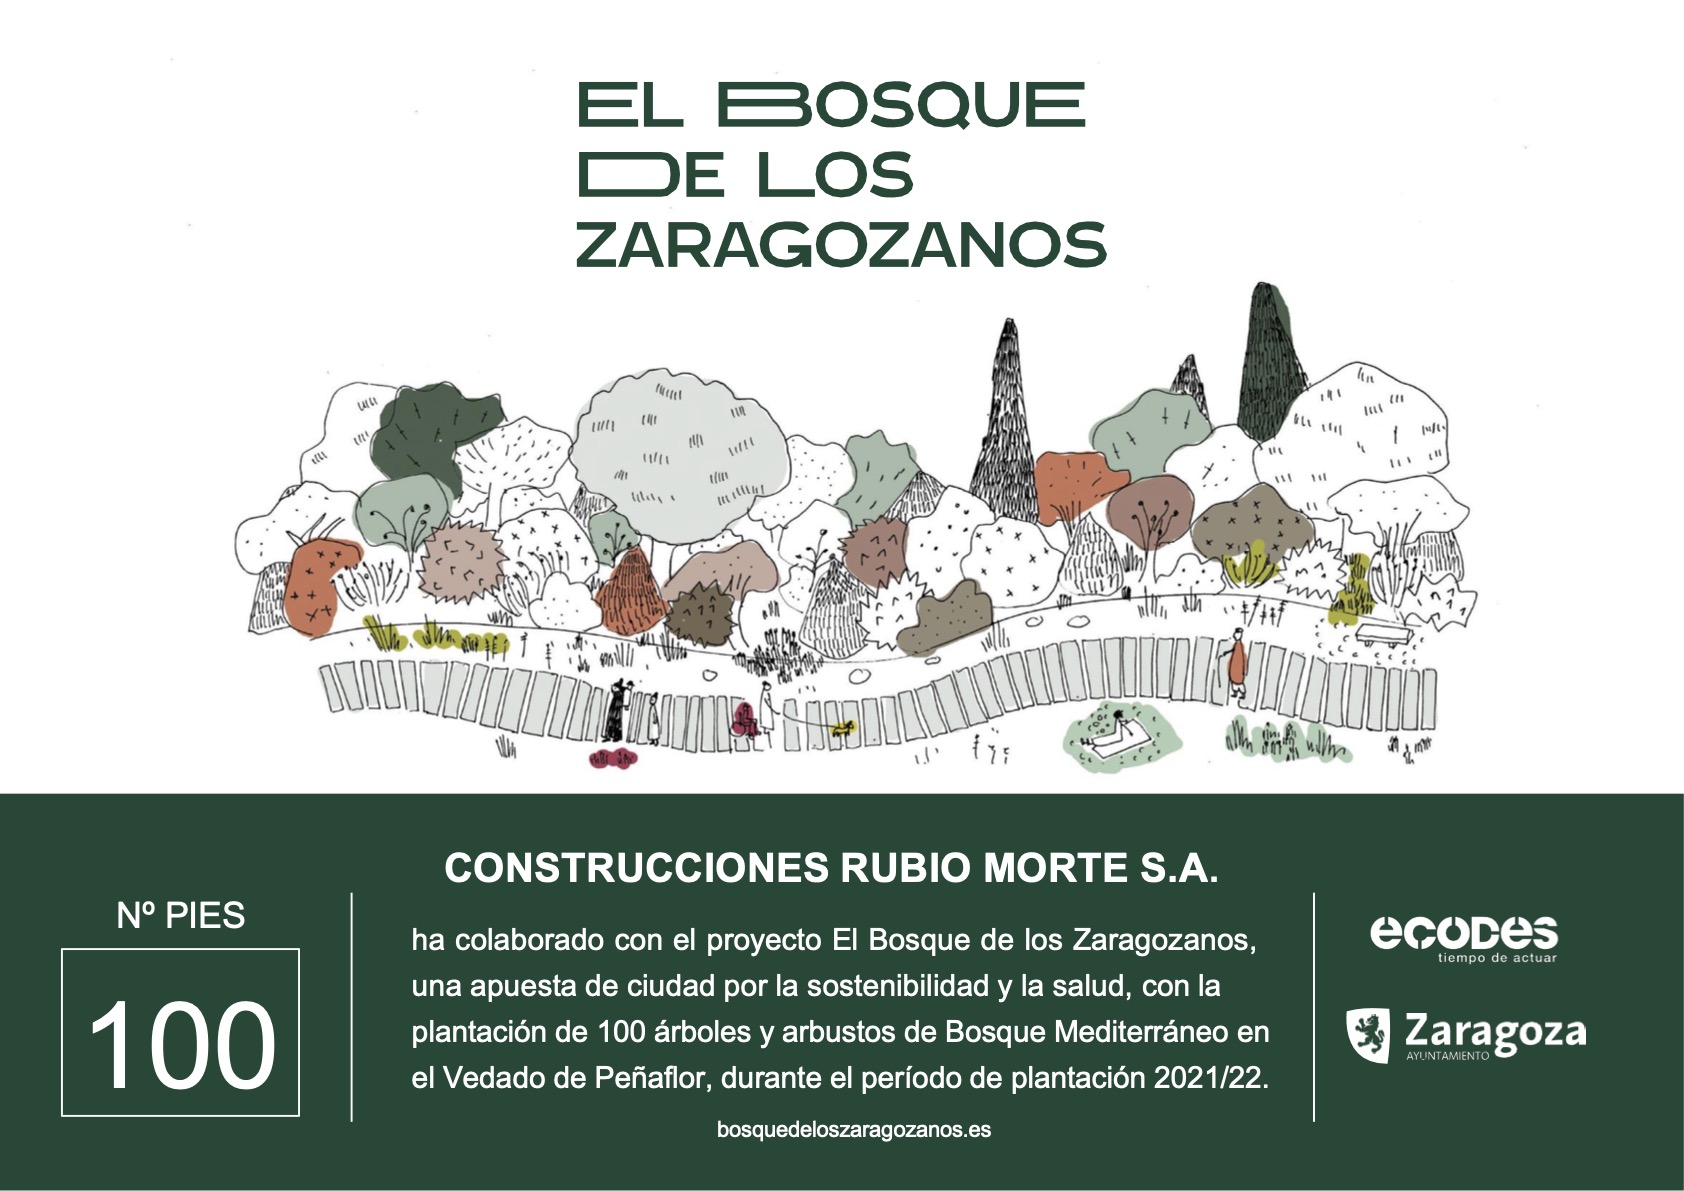 Construcciones Rubio Morte se une a la iniciativa “El Bosque de los Zaragozanos”